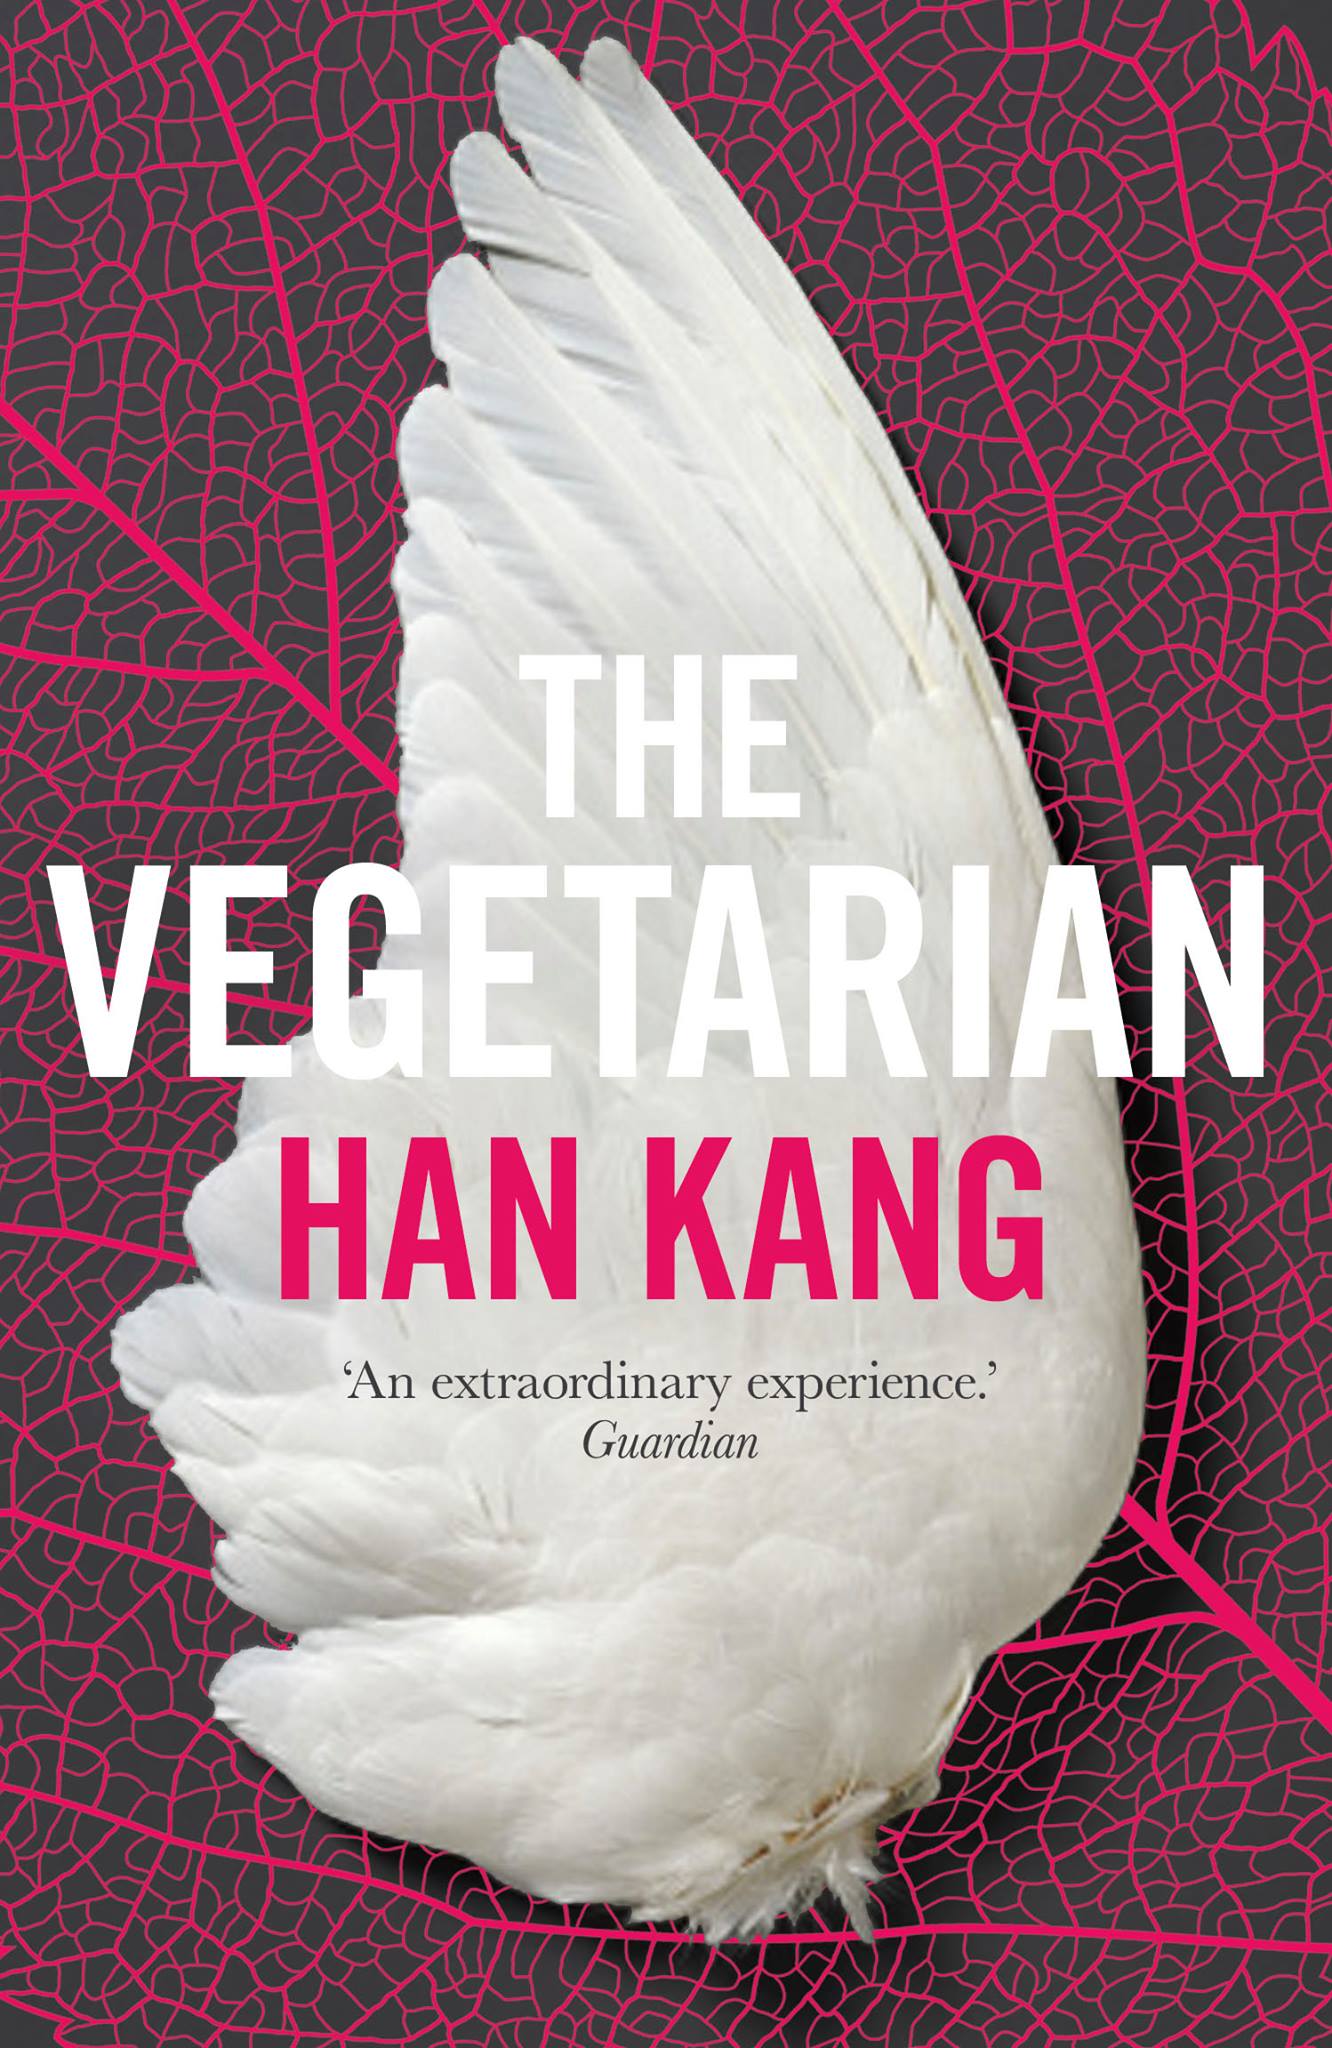 La vegetariana di Han Kang